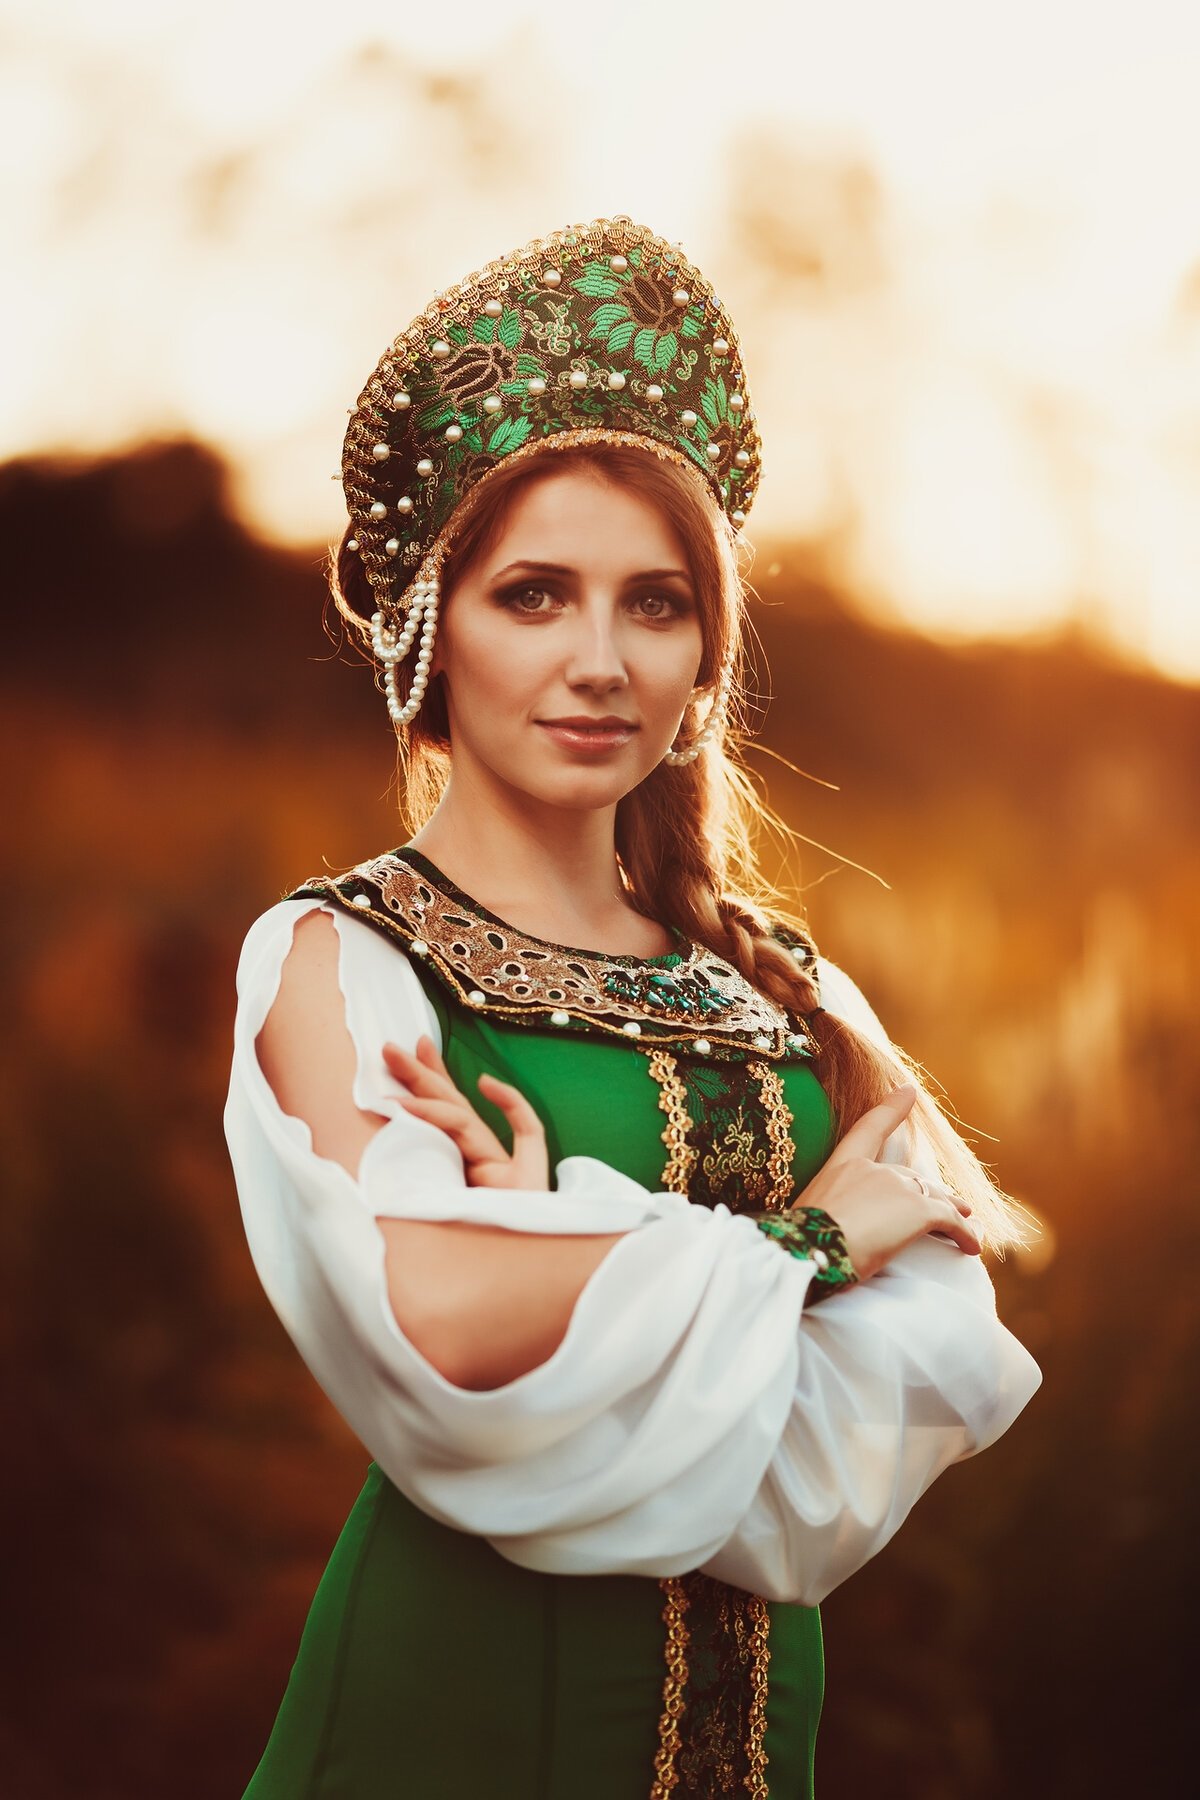 Красивые русские женщины в национальных костюмах